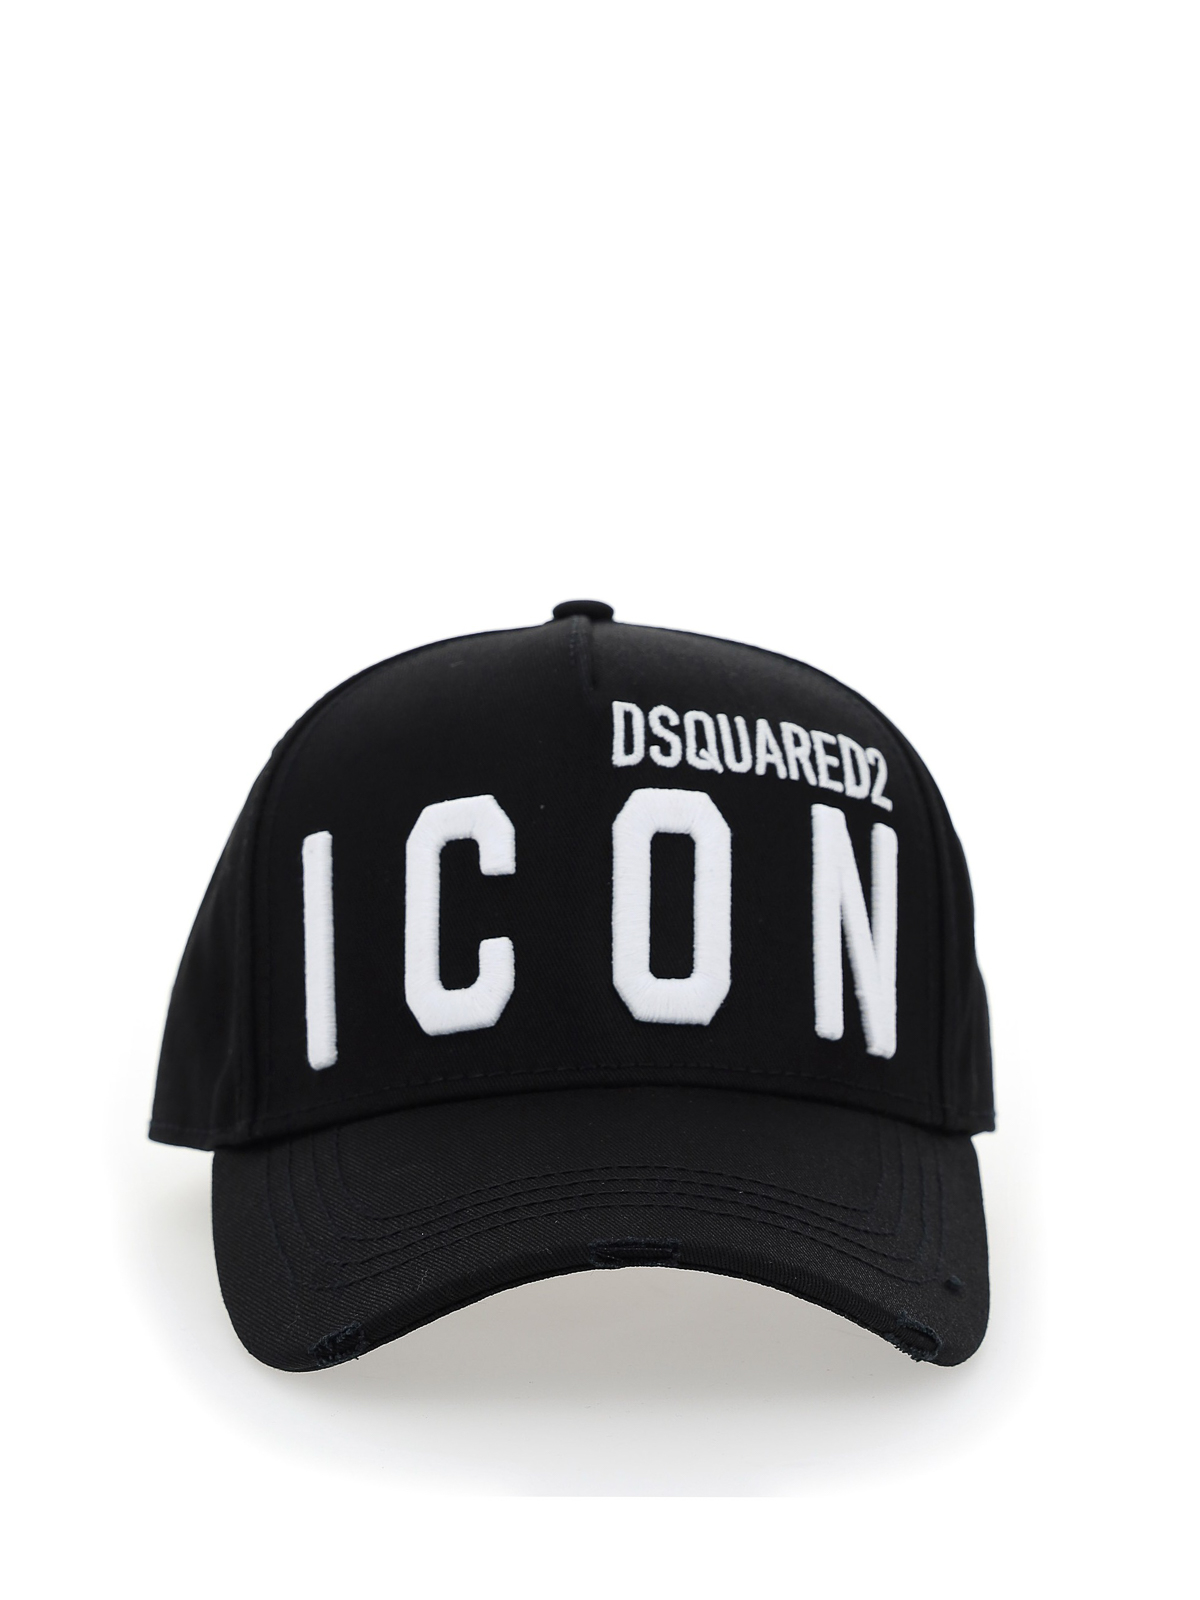 Verovering Kruipen Gorgelen Hats & caps Dsquared2 - Icon baseball hat - BCM041205C00001M063